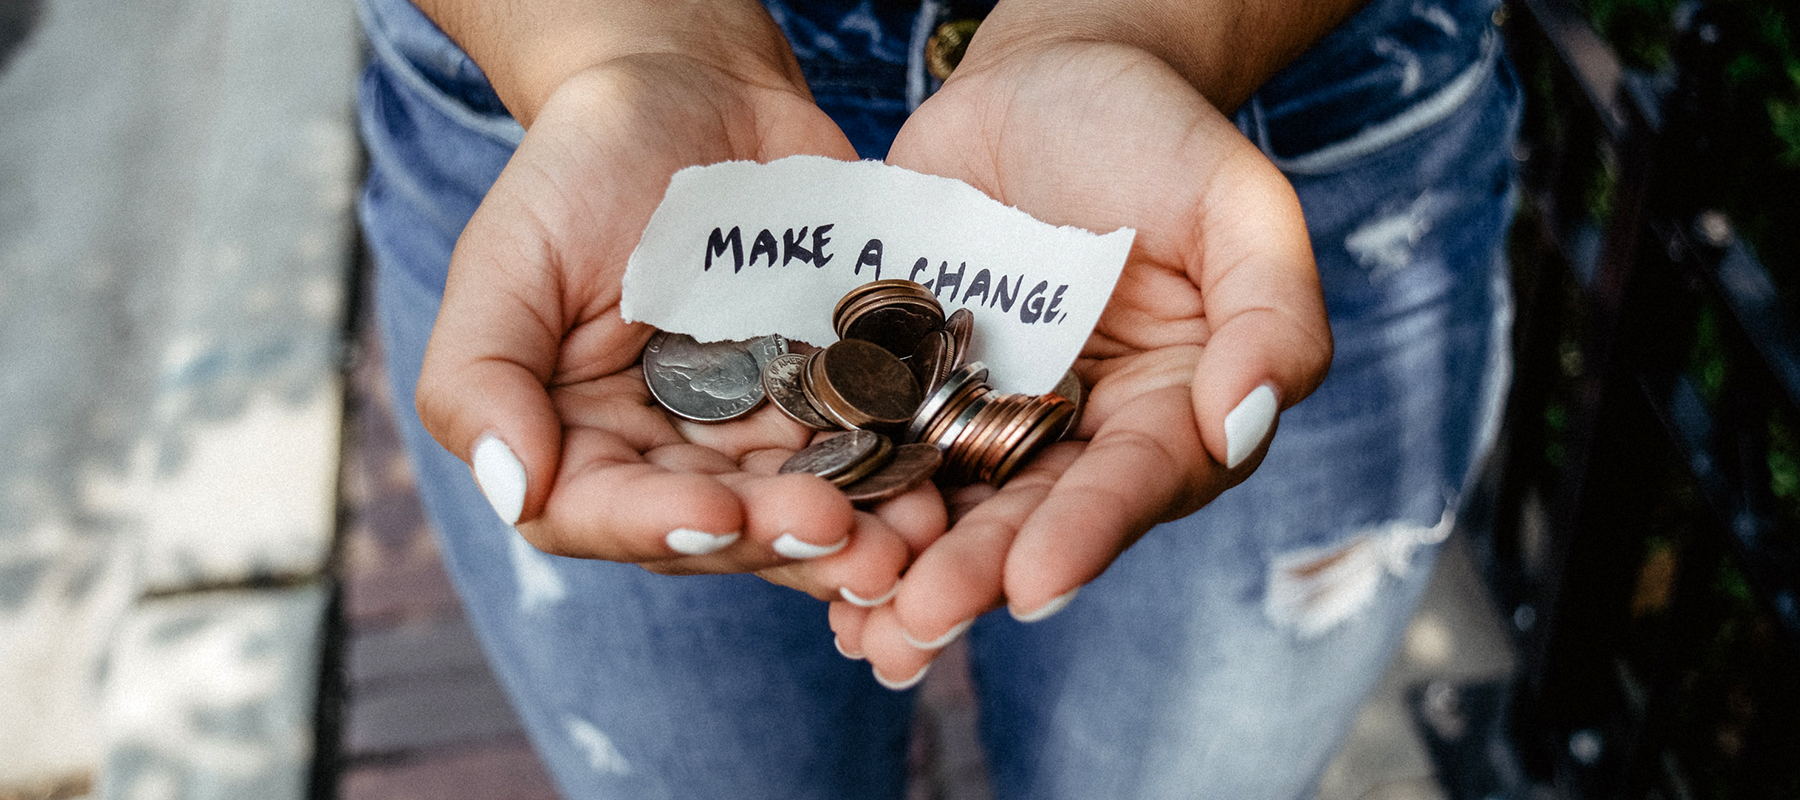 Lo que los millennials pueden enseñar a la Iglesia sobre la generosidad